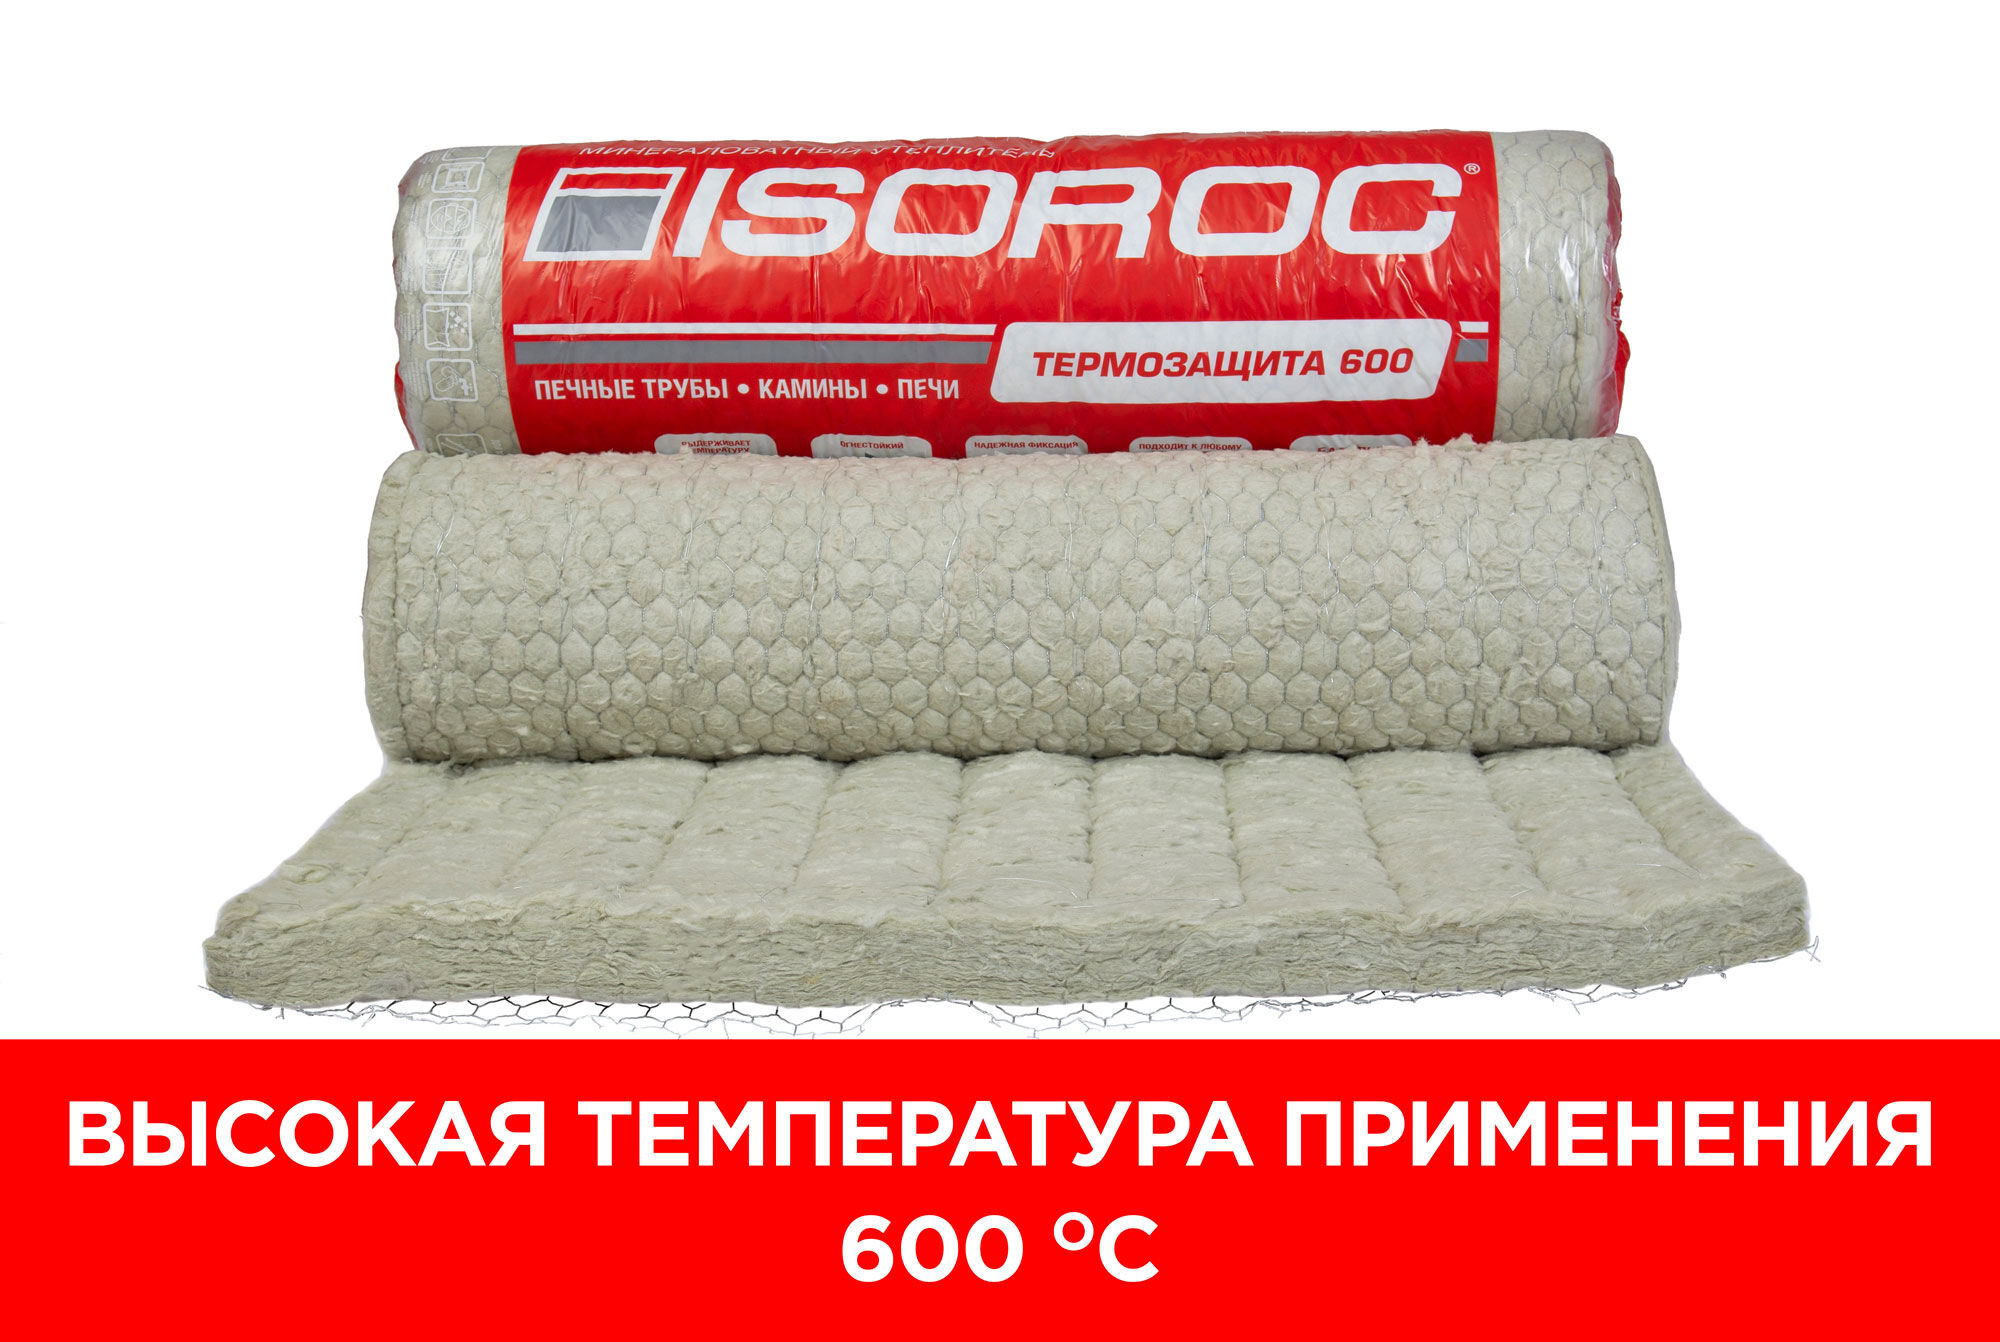 Изоляция для печных труб и каминов Изорок Термозащита 600, 50 мм, 2 м2, 1000х2000 мм